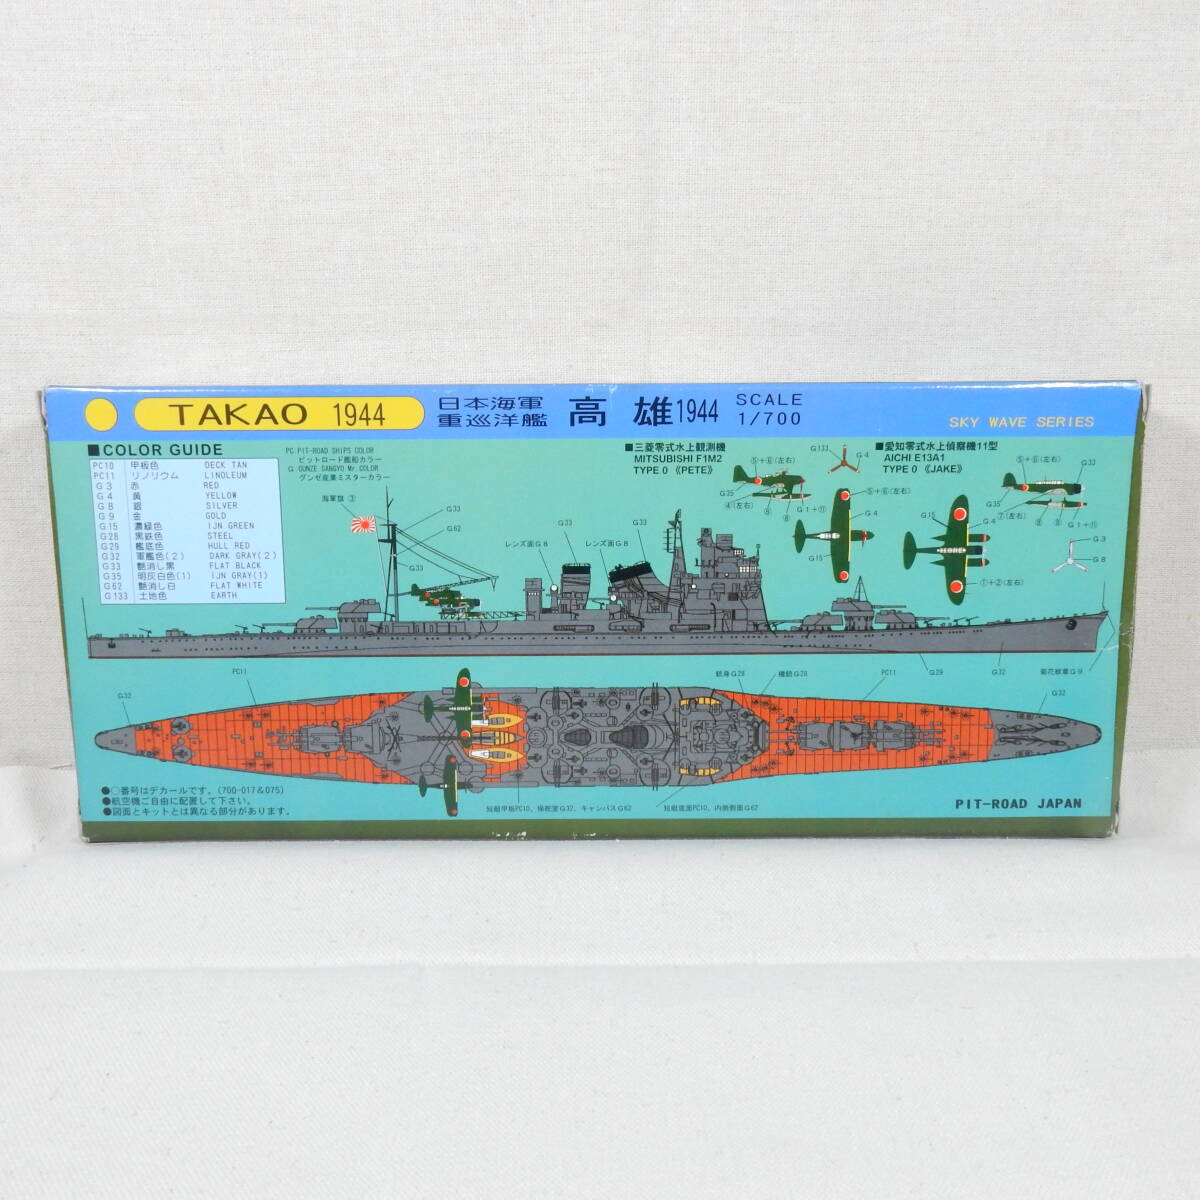 (18317) 日本海軍重巡洋艦 高雄(たかお) 1944 ピットロード 1/700 スカイウェーブシリーズ W57 内袋未開封 未組立て_画像5